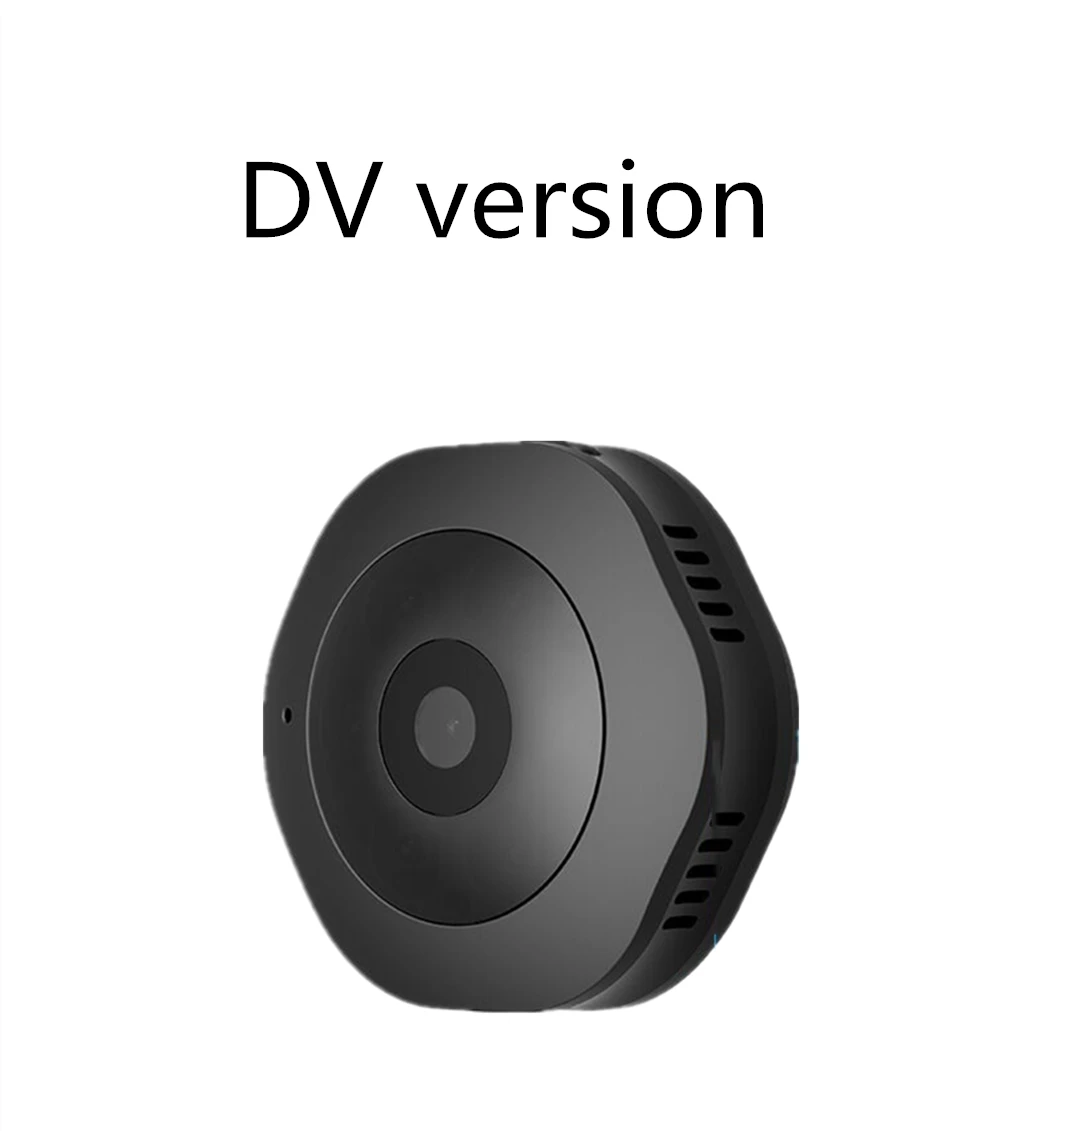 Vikewe H6 DV/Wifi Мини ночная версия камеры мини Экшн-камера с датчиком движения видеокамера диктофон маленькая камера - Название цвета: DV version